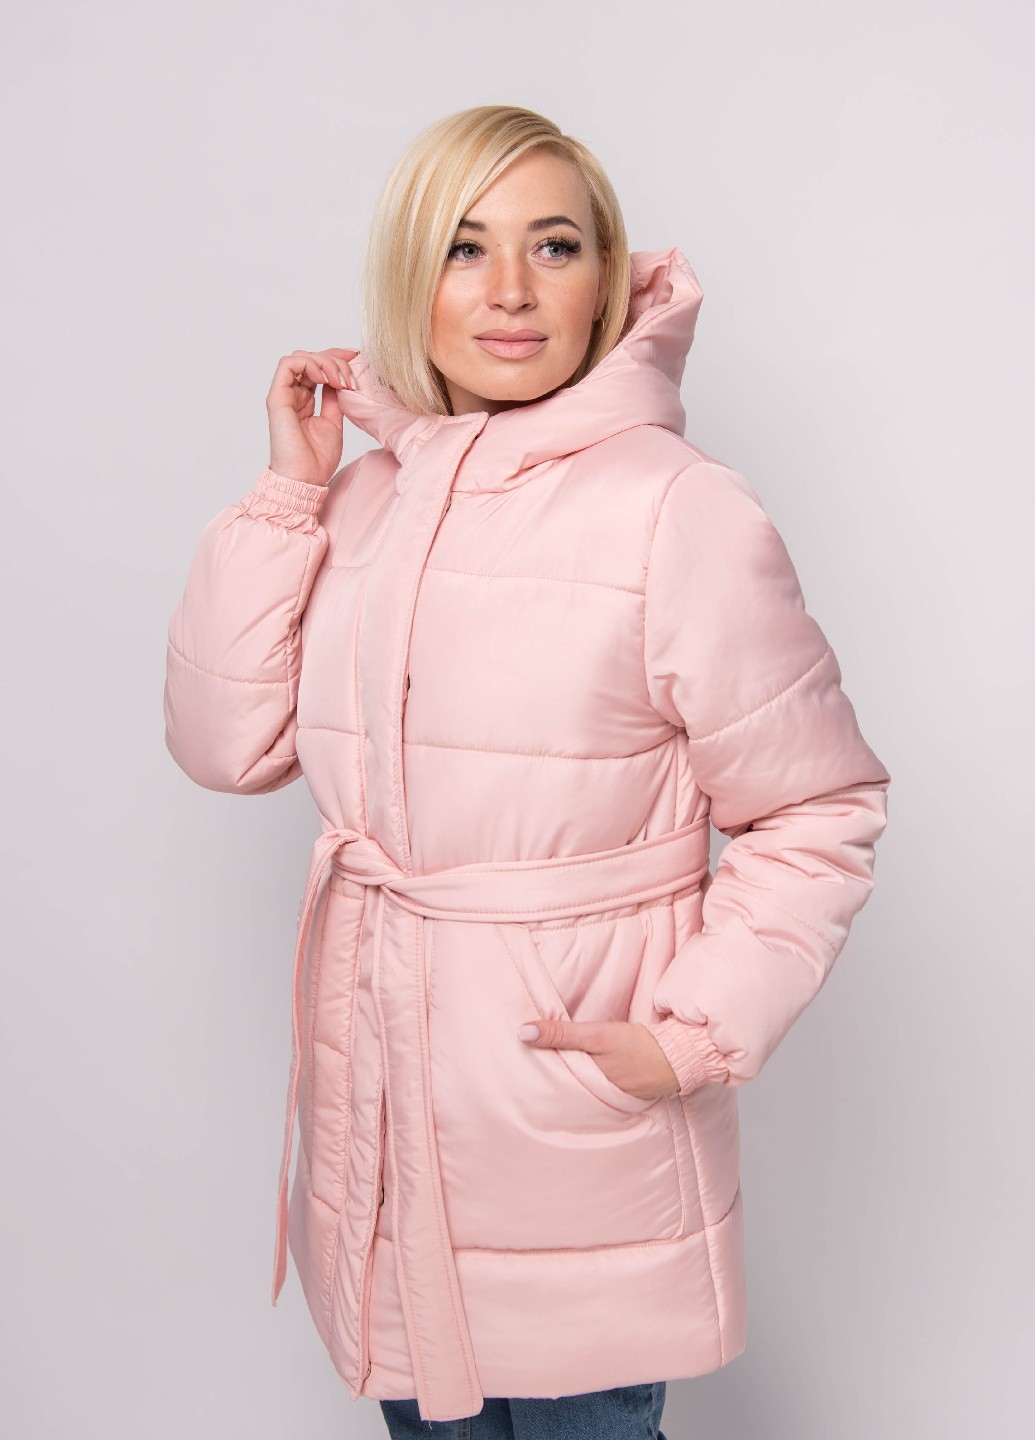 Куртка женская зимняя пудра 290/104 в интернет-магазине